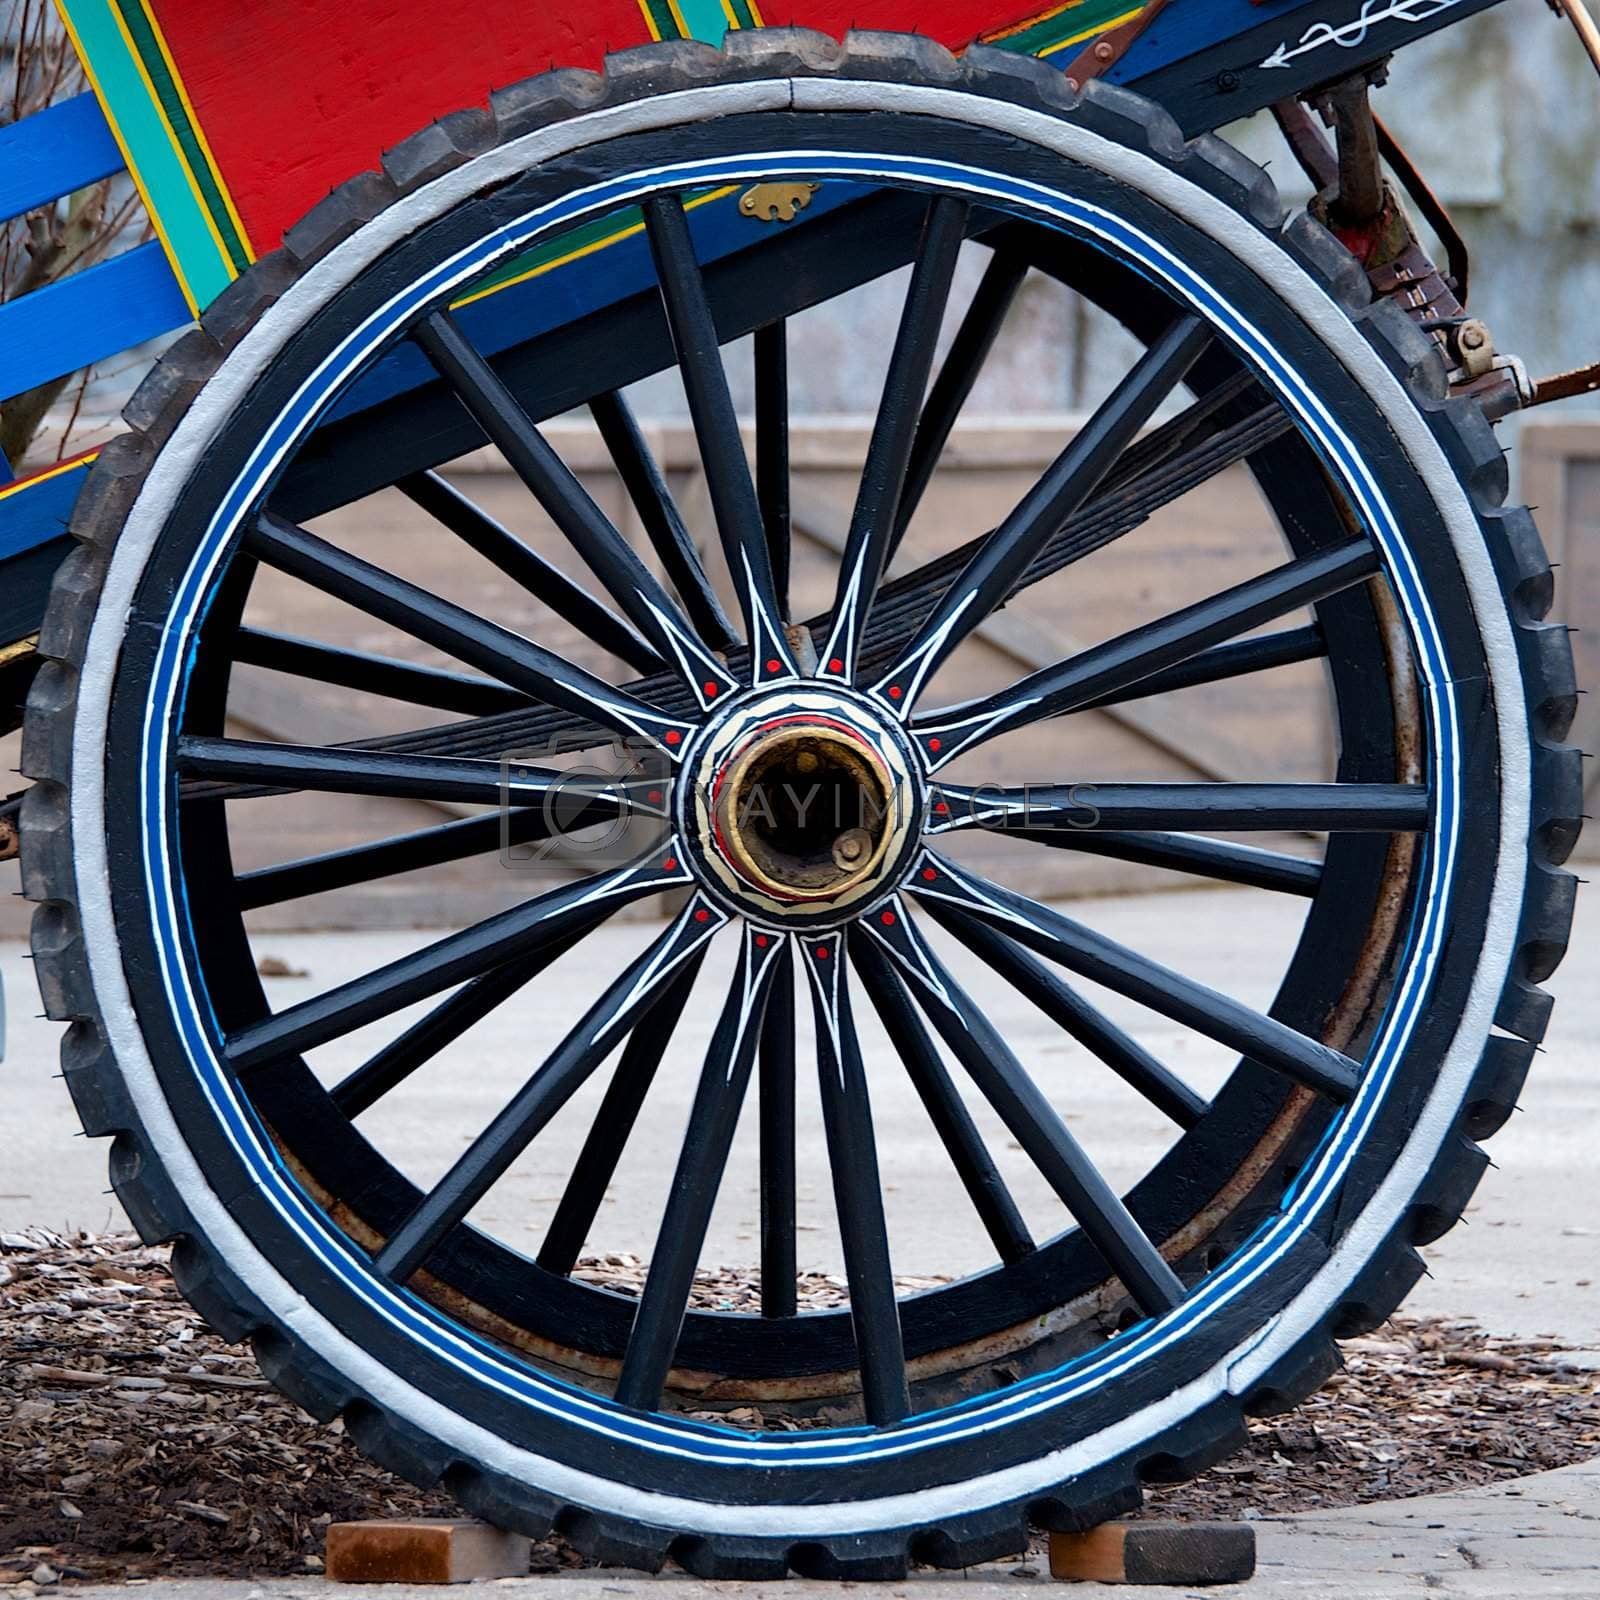 Royalty free image of Cart wheel by berkehaus